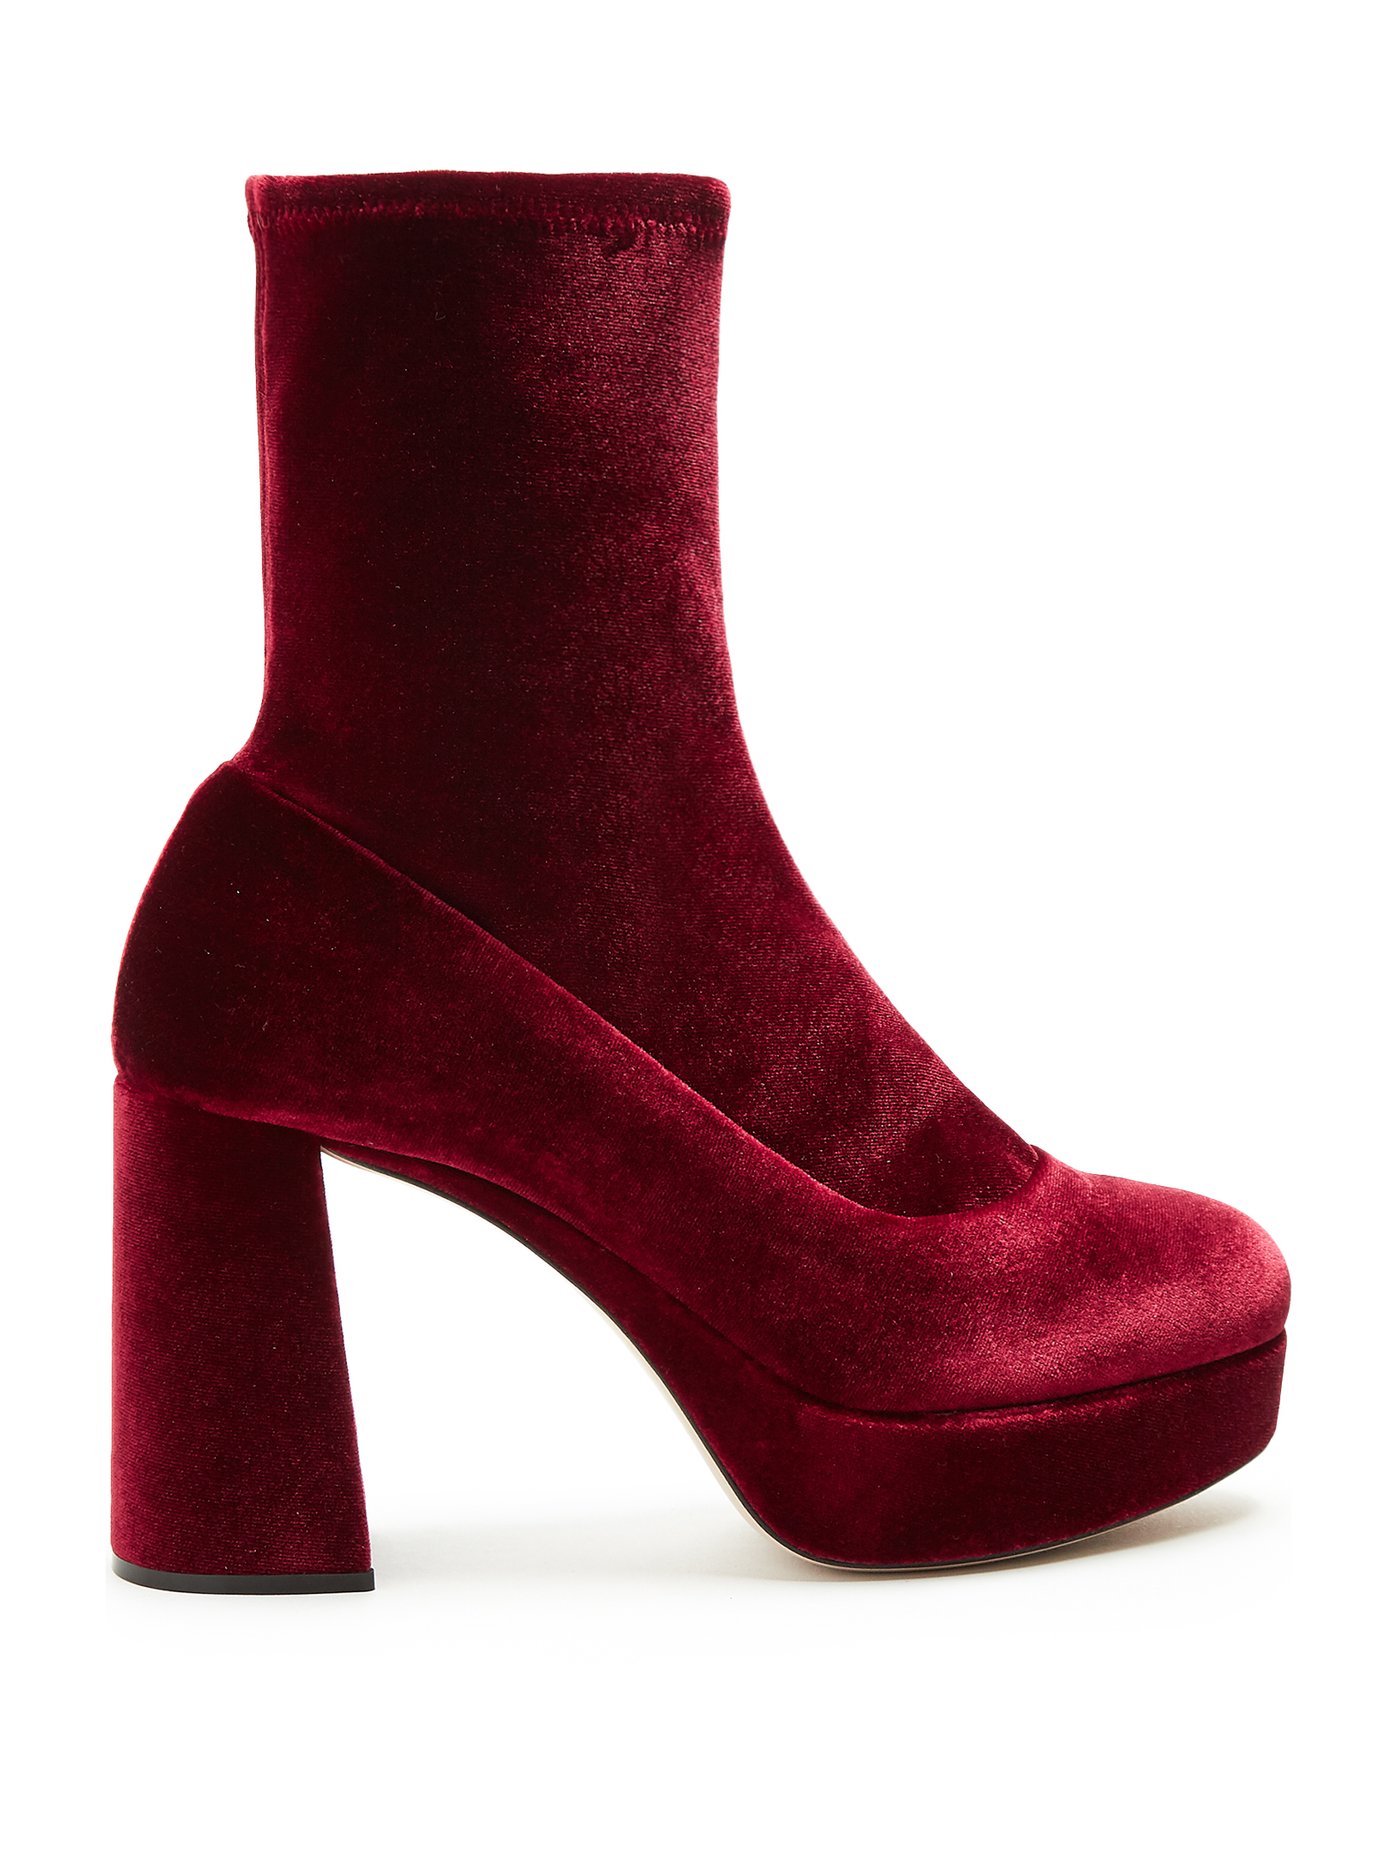 Velvet block-heel ankle boots | Miu Miu 